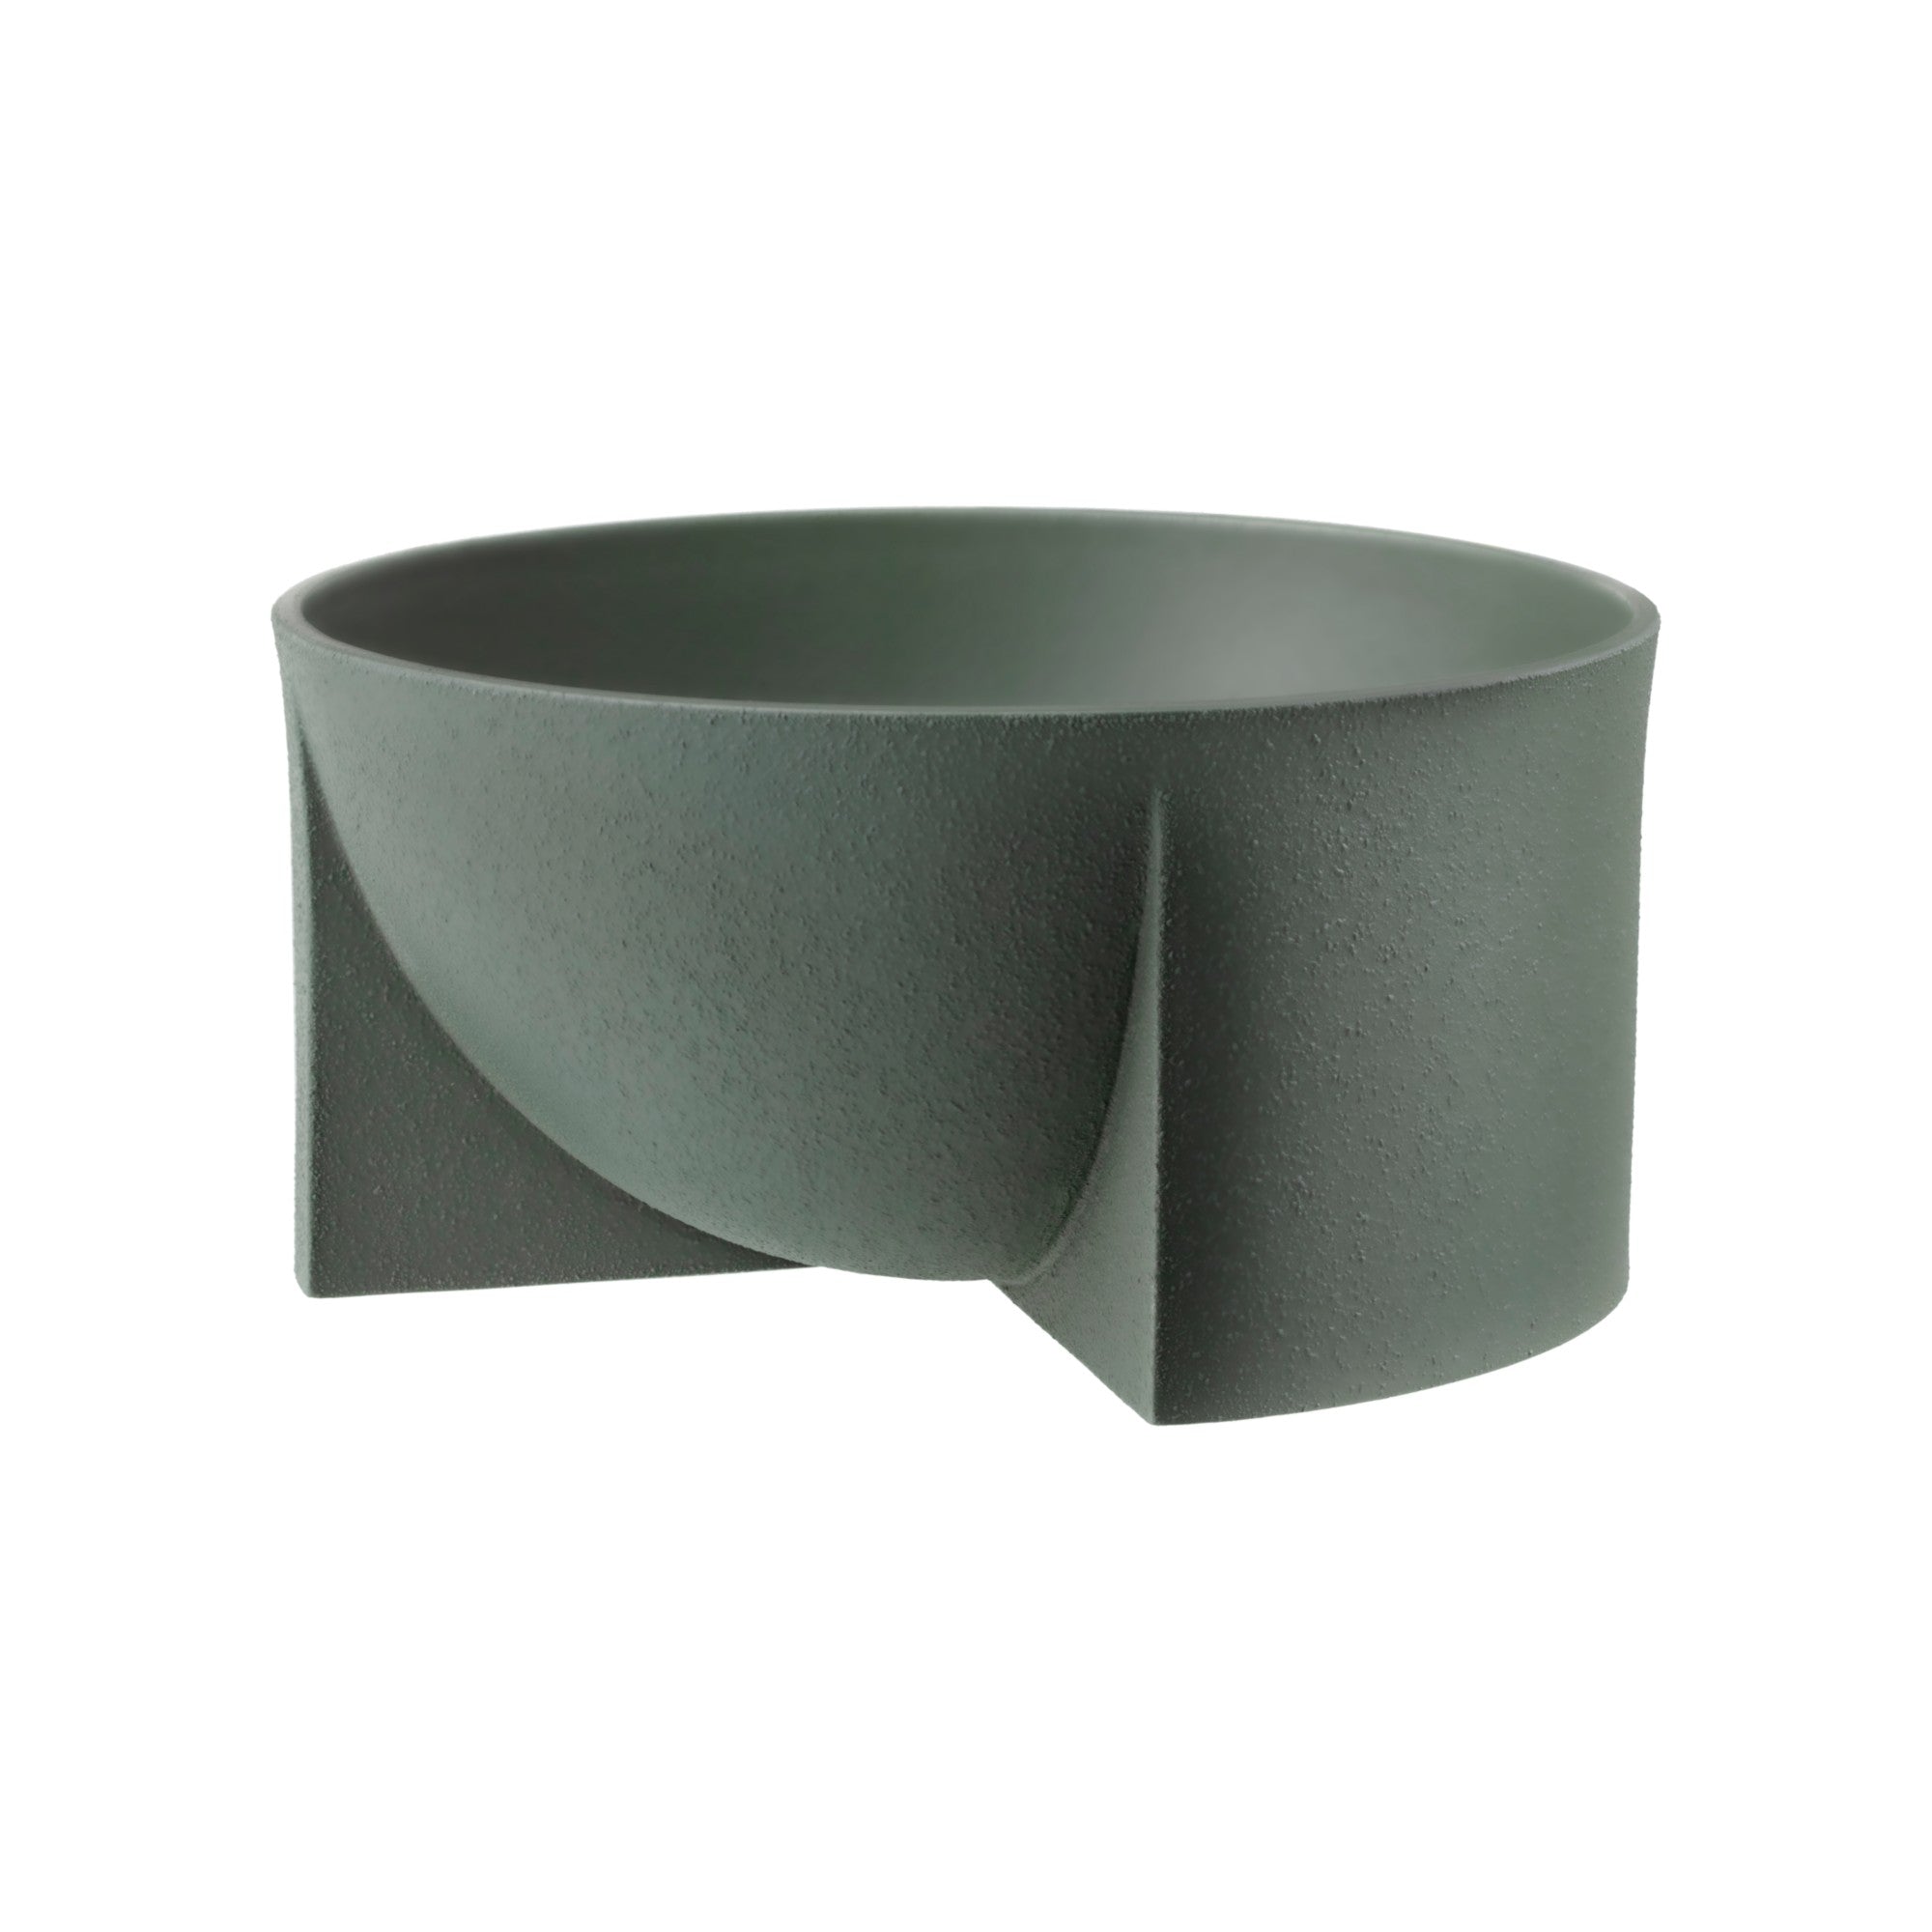 Kuru ceramic bowl 240 x 120 mm moss green / 9.5" x 4.75"